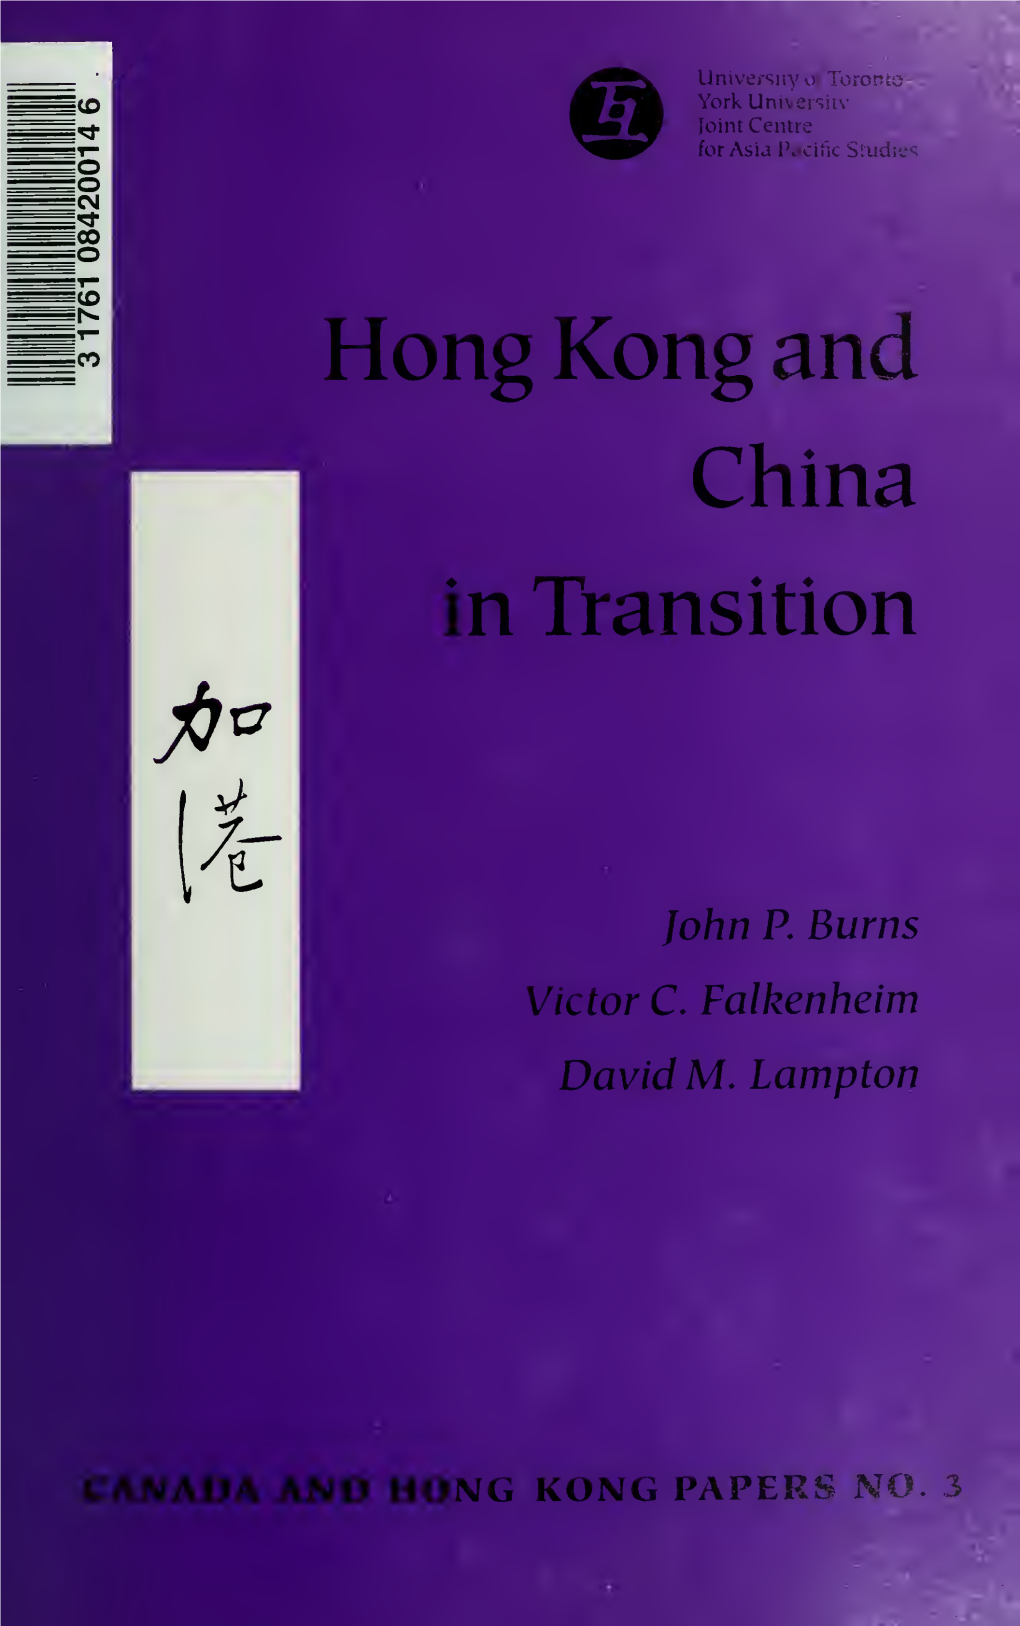 Hong Kong and China in Transition